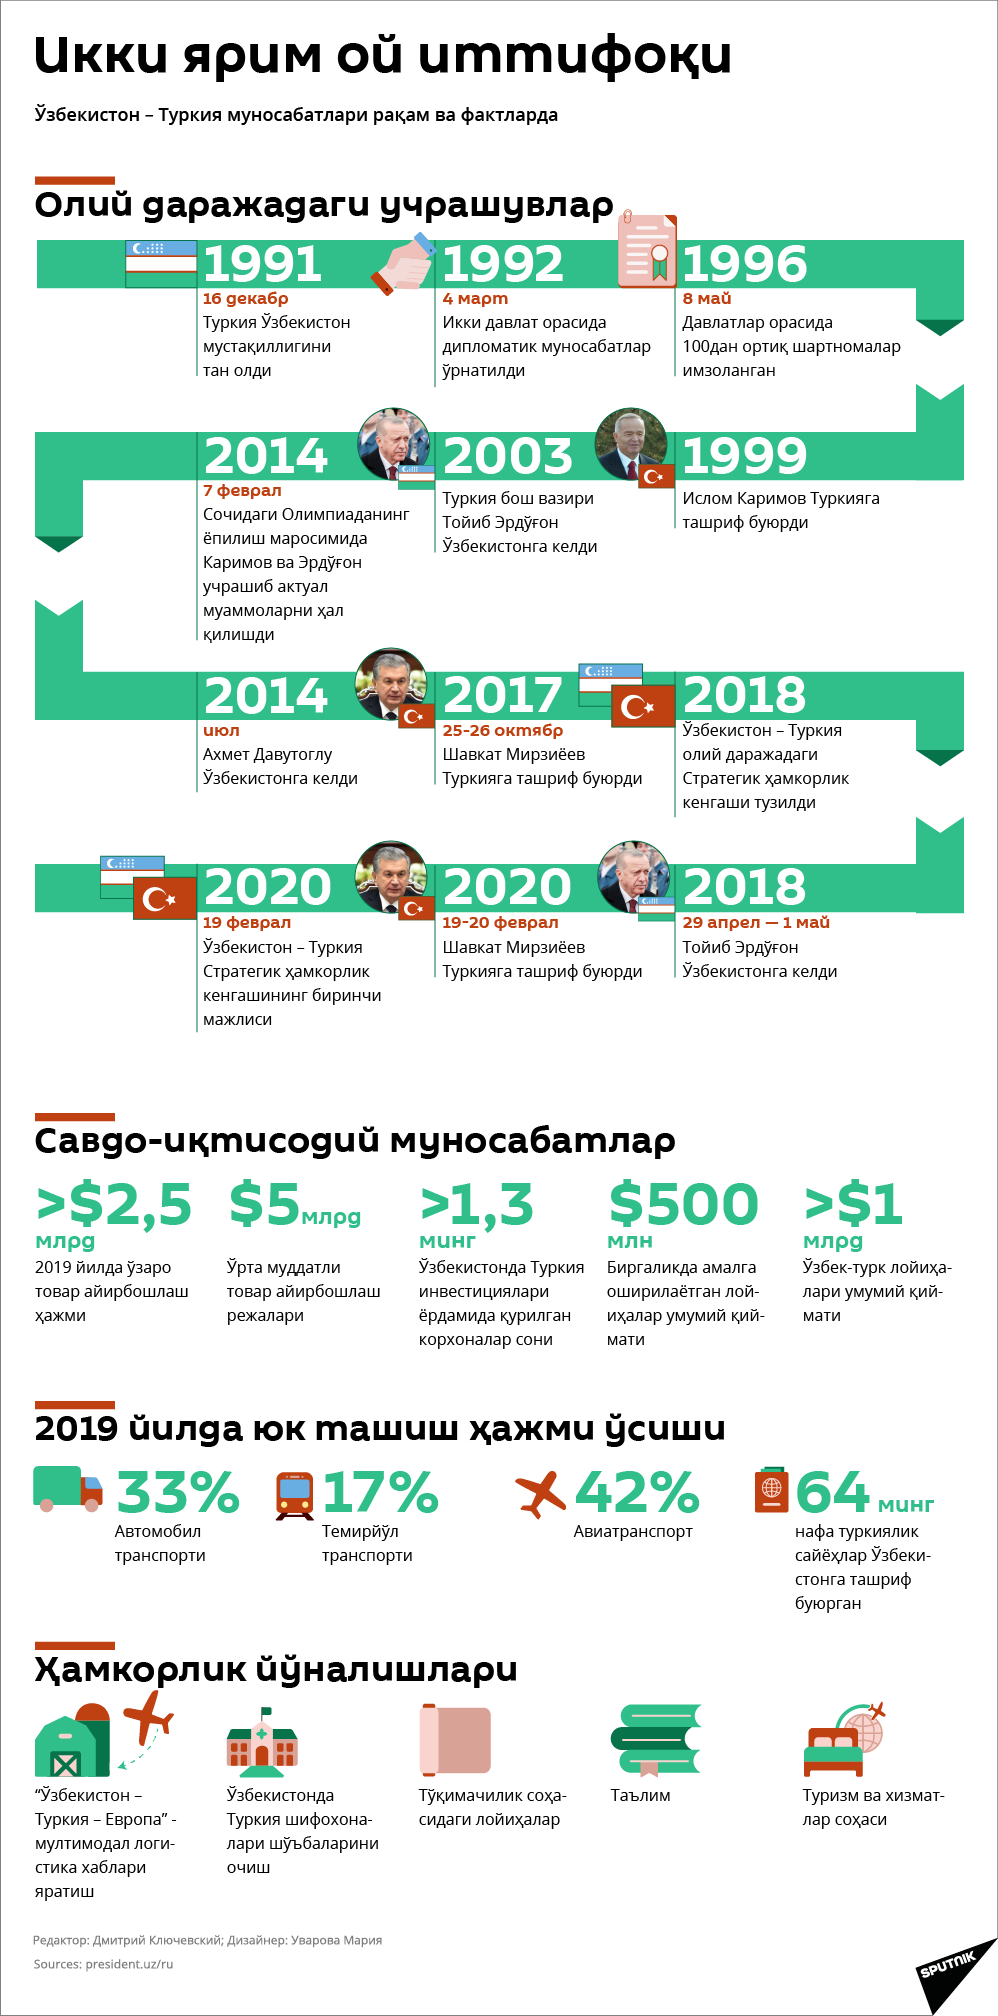 Oʻzbekiston - Turkiya  munosabatlari - Sputnik Oʻzbekiston